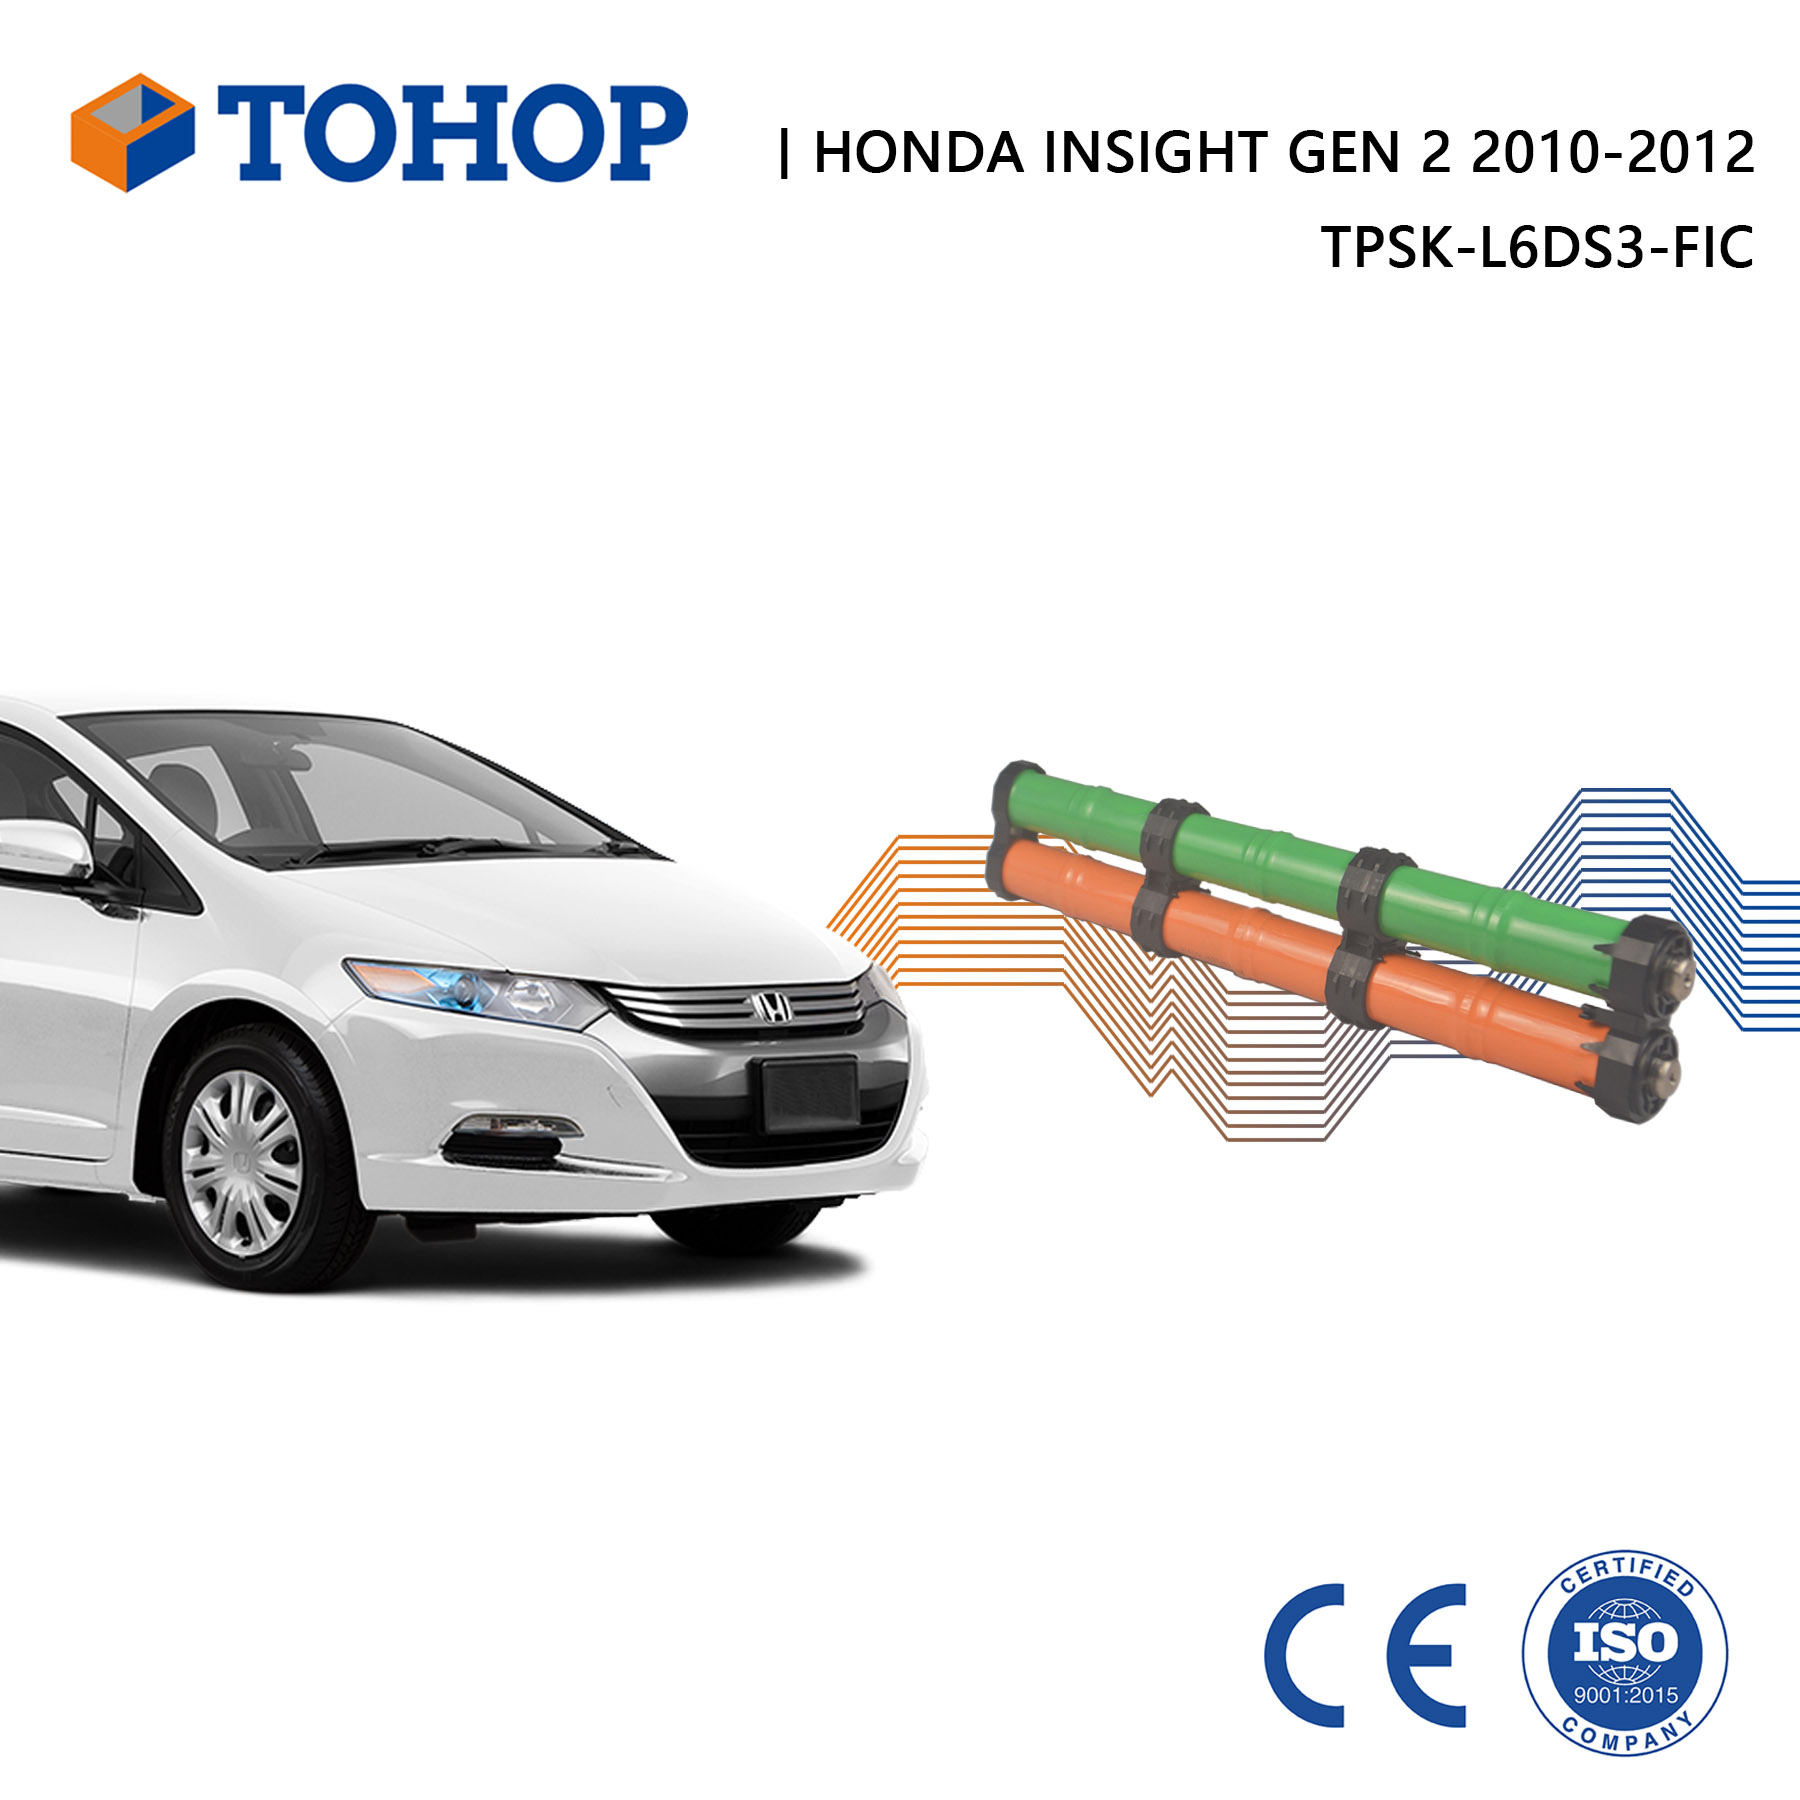 Nouvelle cellule de remplacement de batterie hybride Honda Insight Gen 2 14,4 V 6,5 Ah